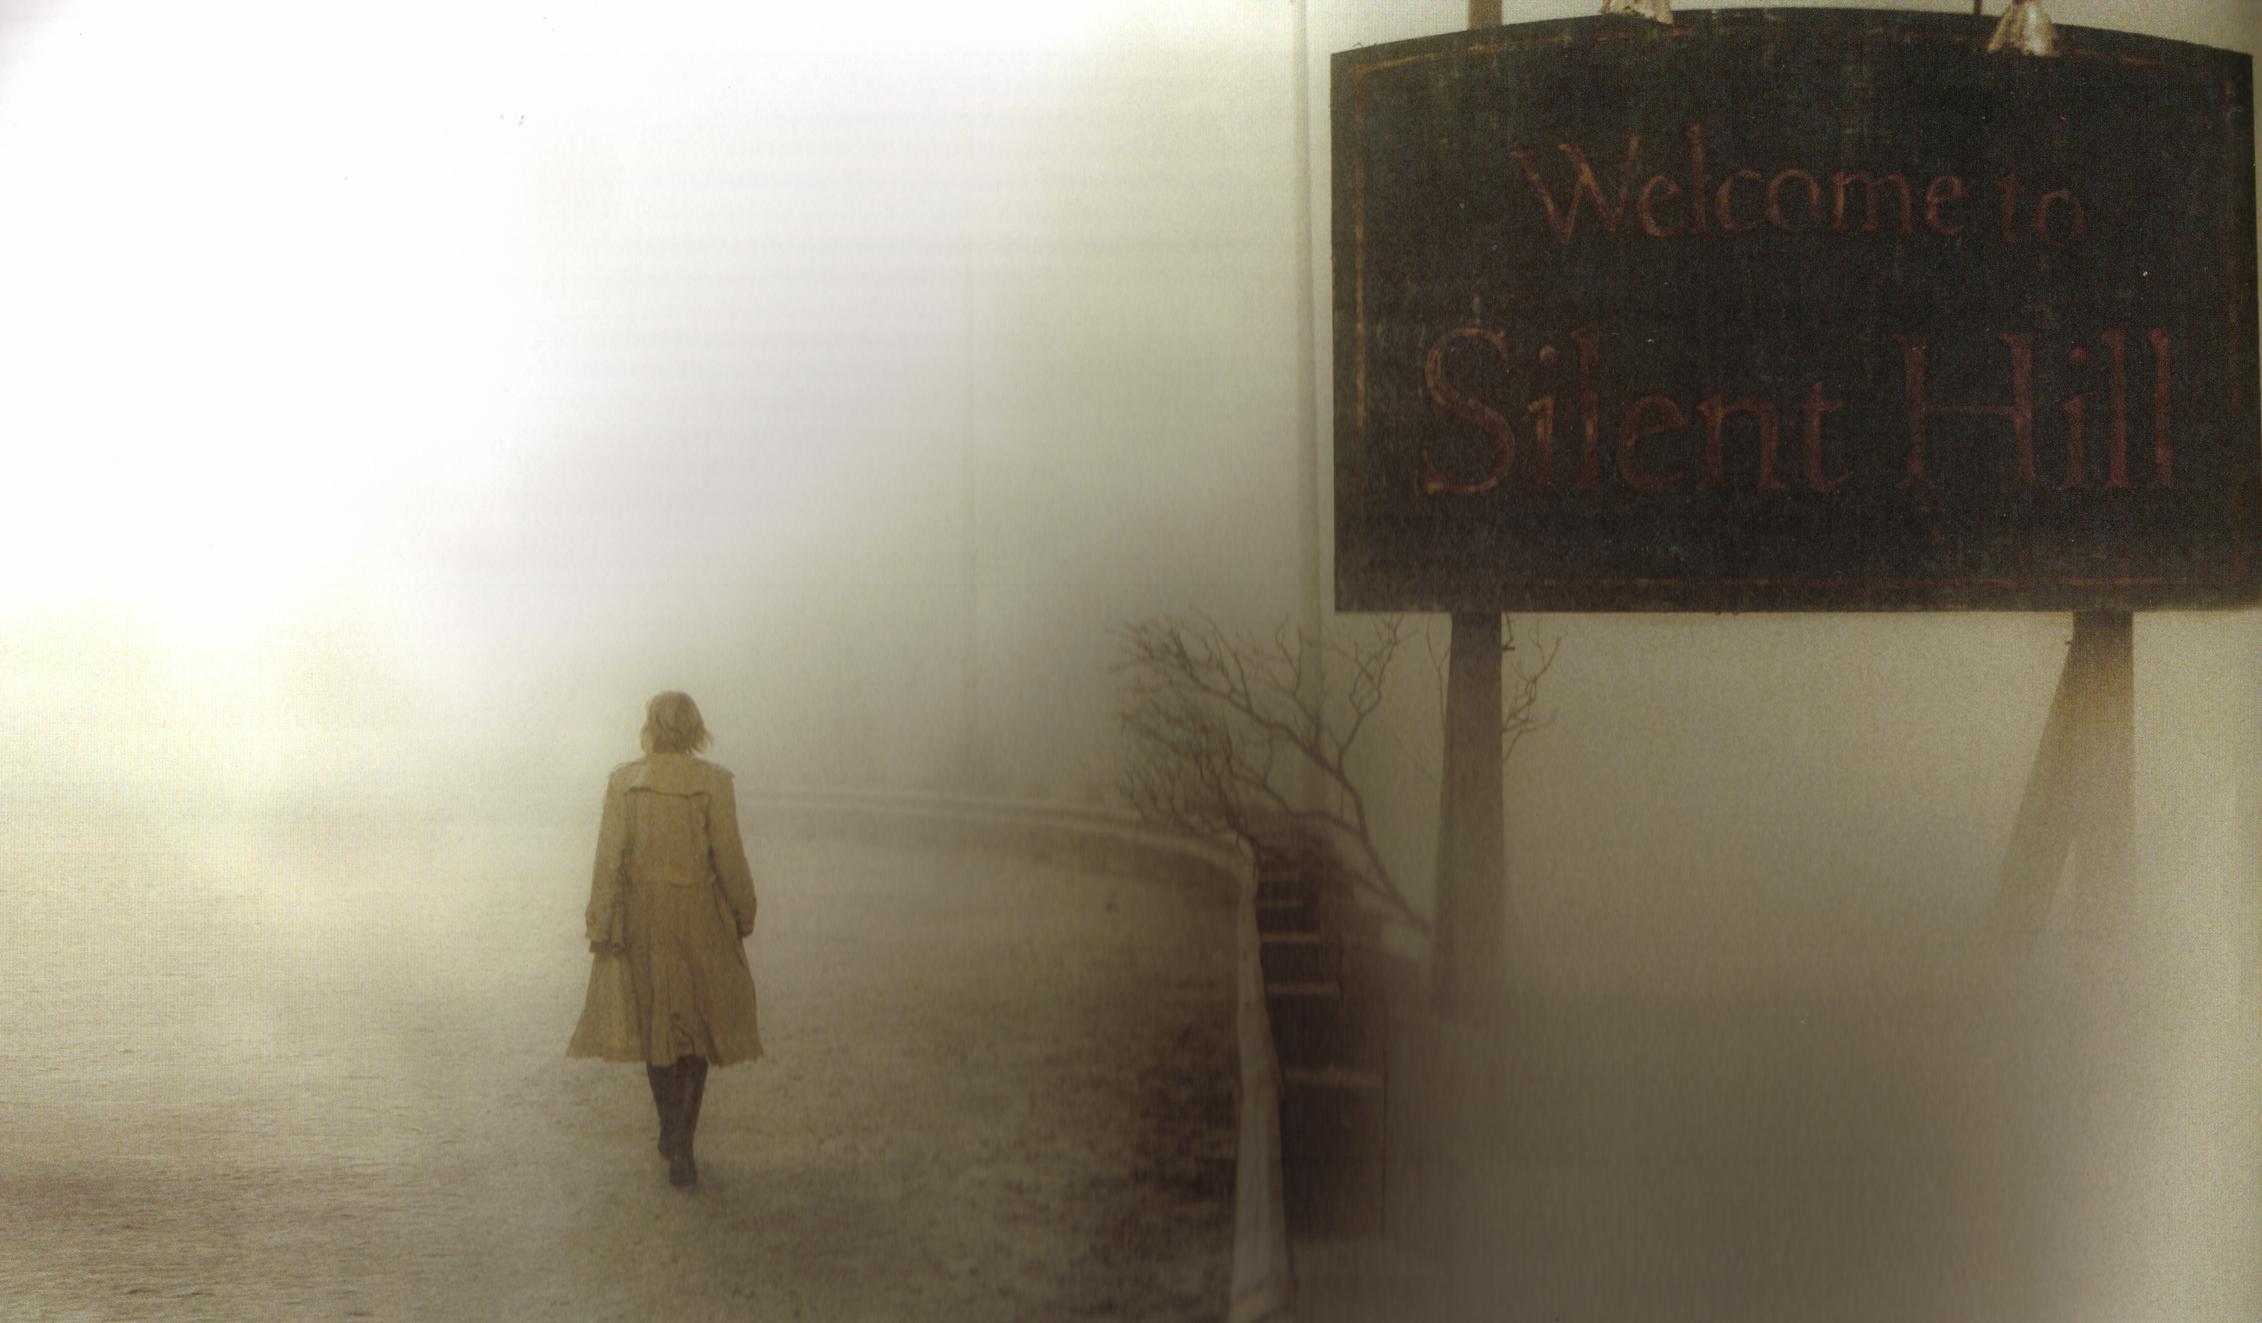 映画 サイレントヒル Silent Hill 超完全解読 というより 大塚の深読み 大塚陽一の感動スイッチ